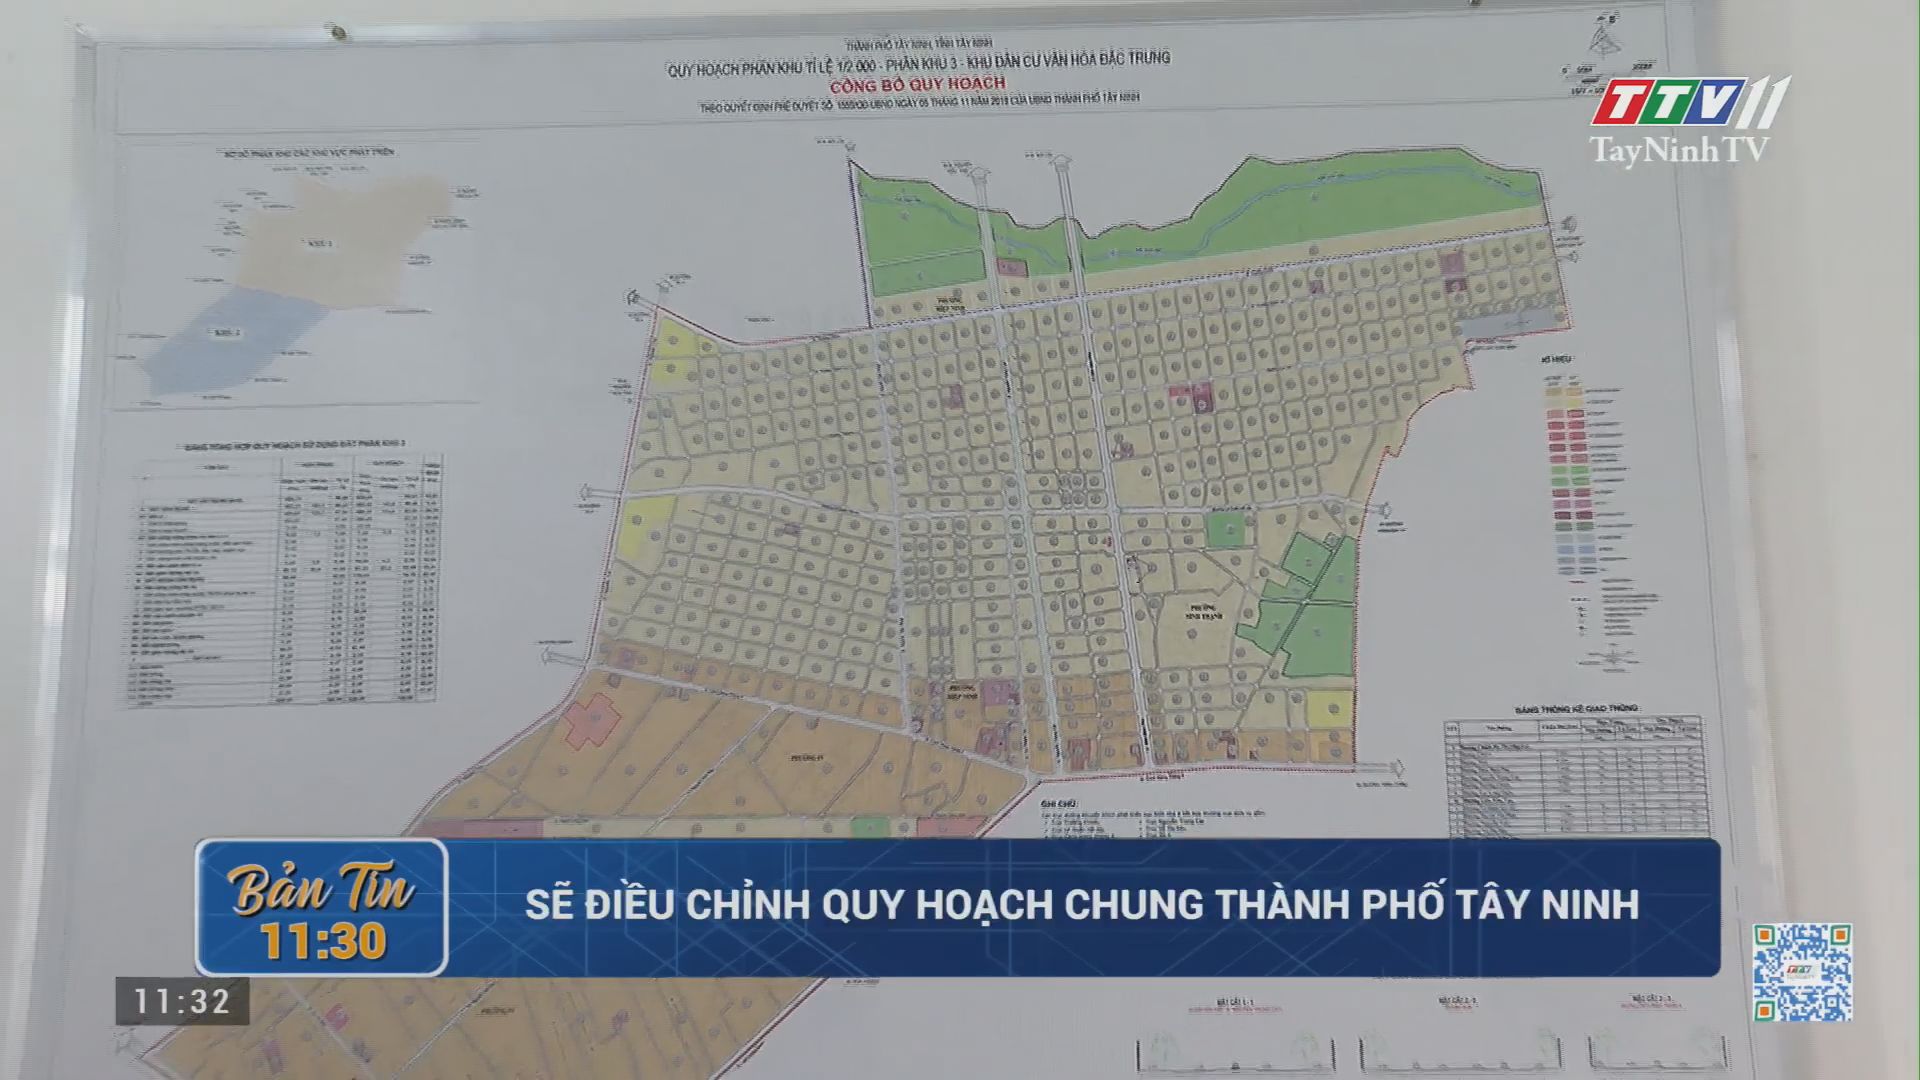 Sẽ điều chỉnh quy hoạch chung thành phố Tây Ninh | TayNinhTV